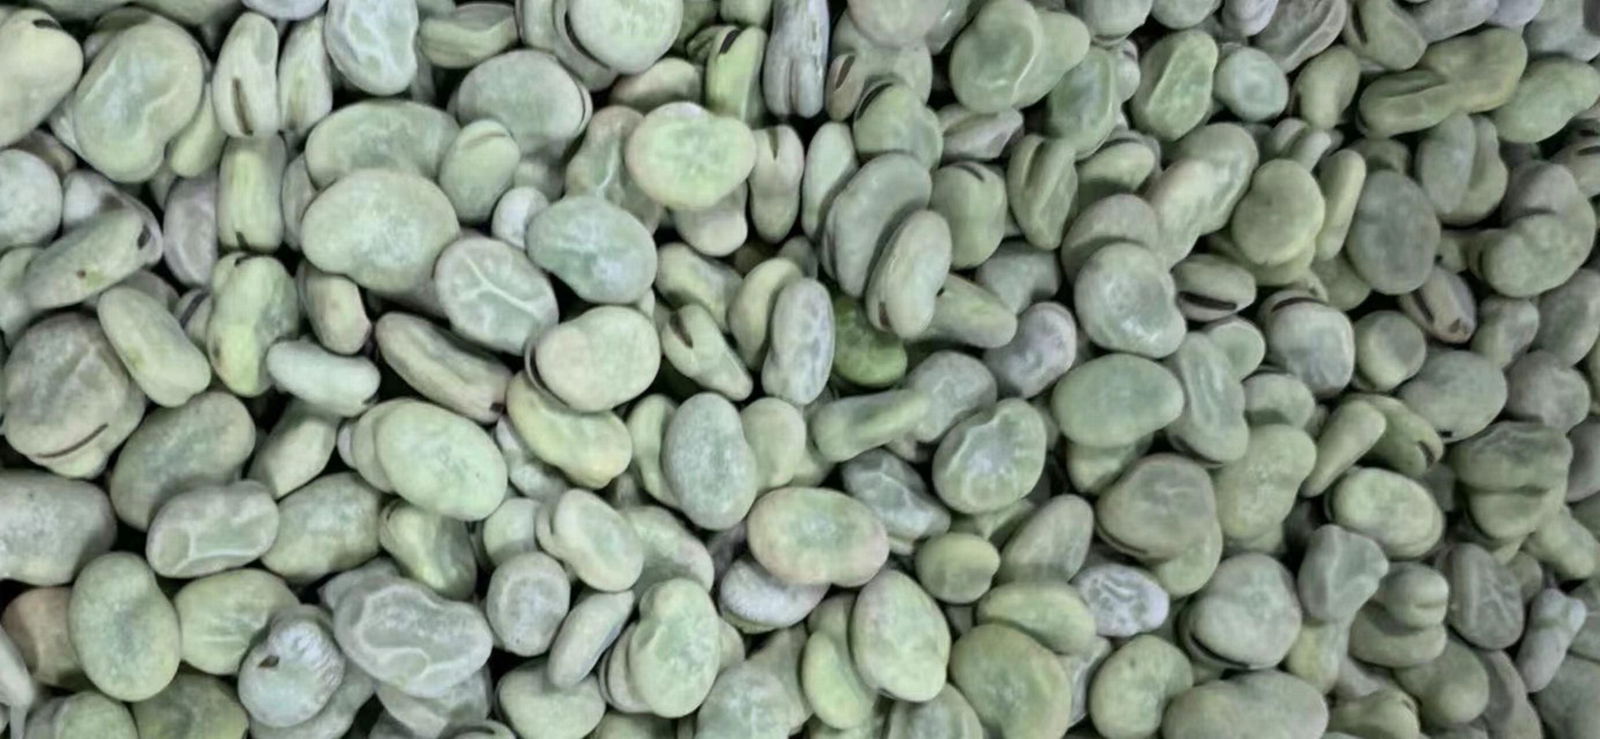 IQF Broad Beans,Frozen Broad Beans,IQF Fava Bean,Frozen Fava Beans,wholes/halves 5